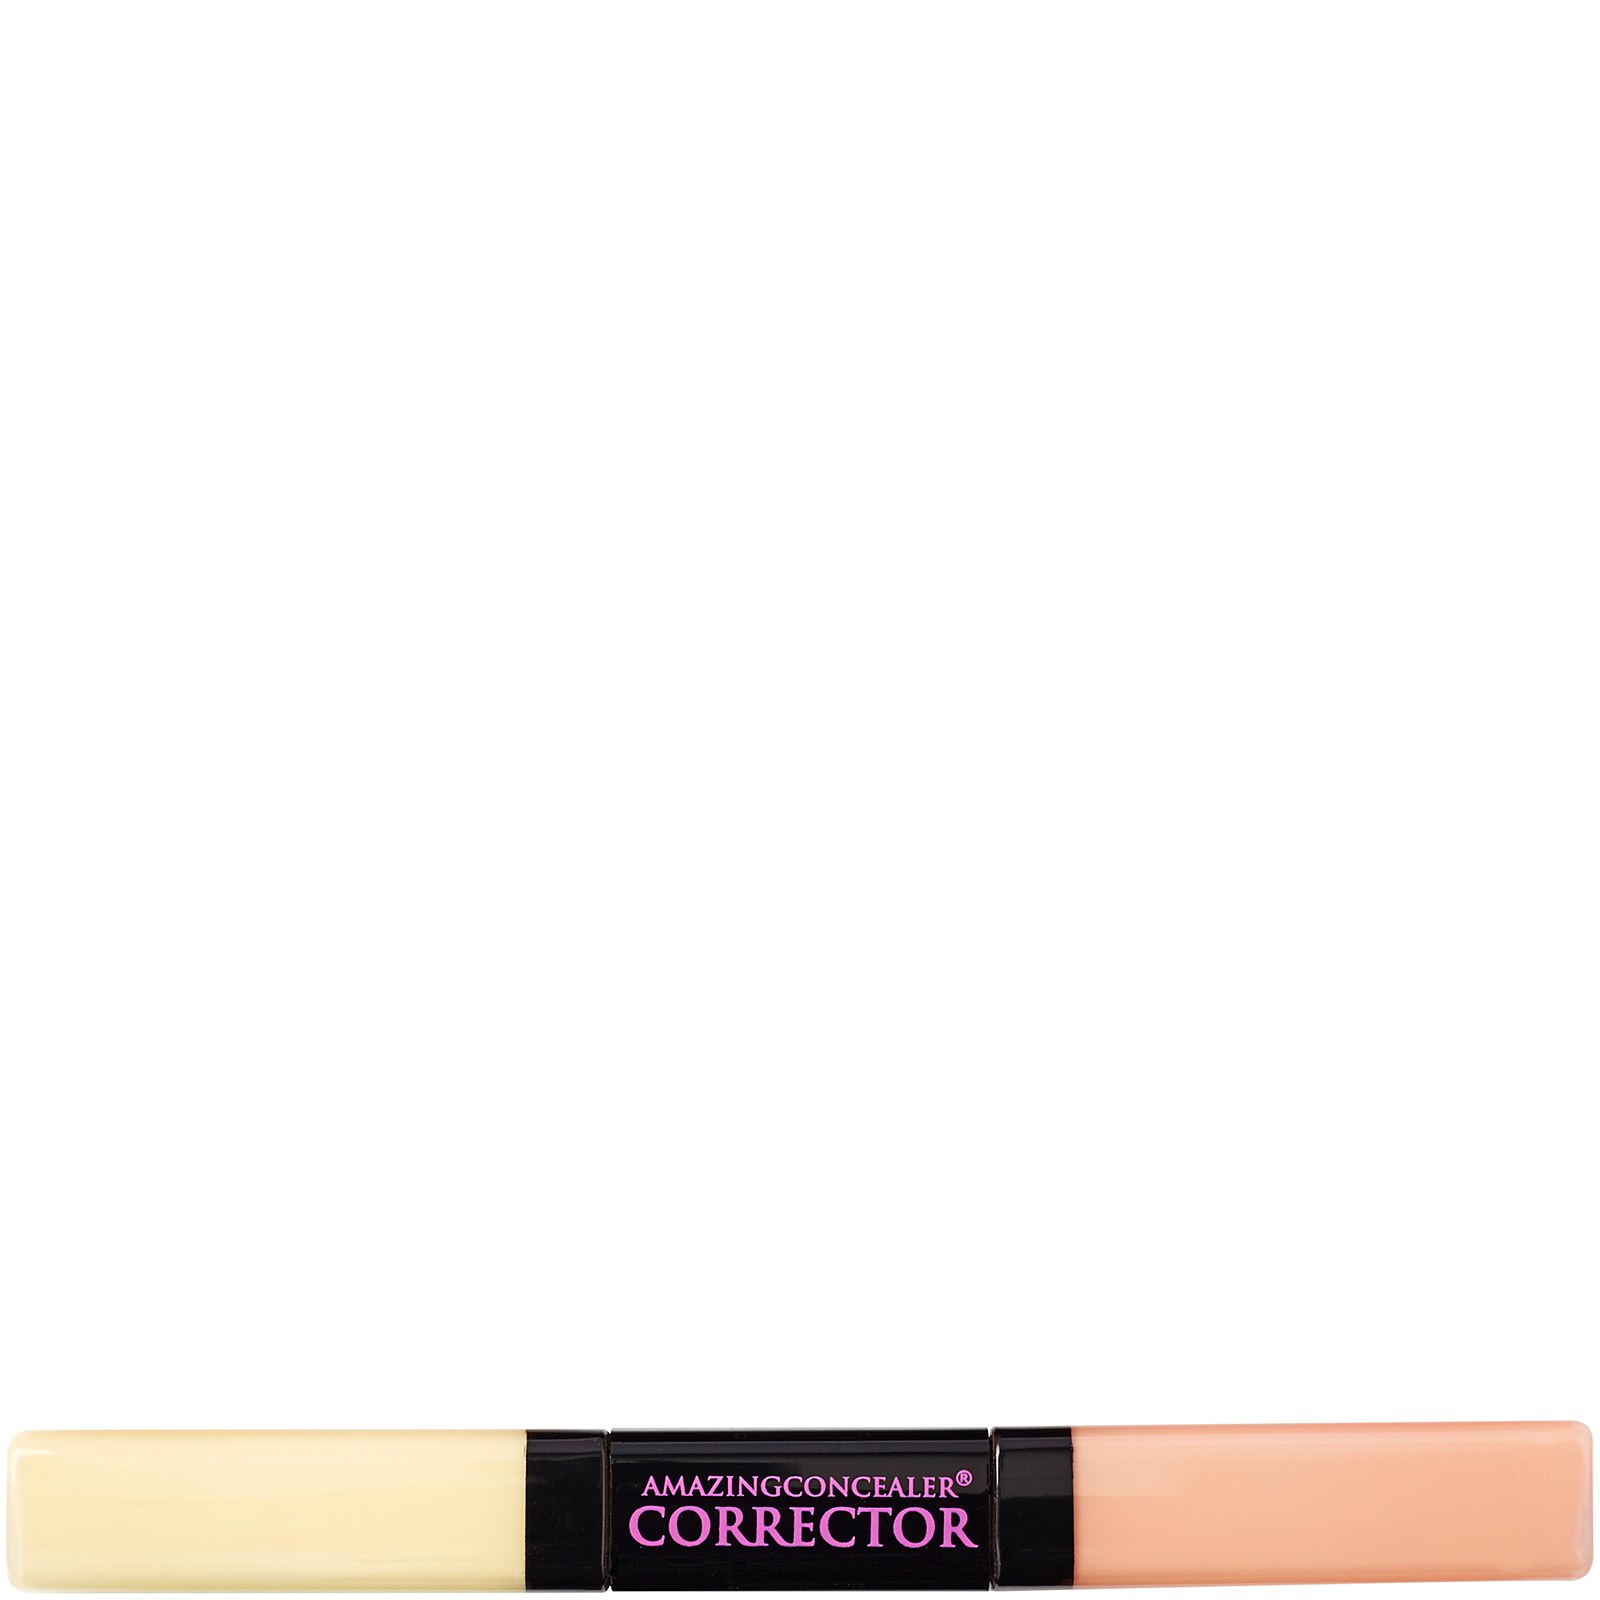 Corrector de Amazing Cosmetics - Tono medio claro 6,2 g